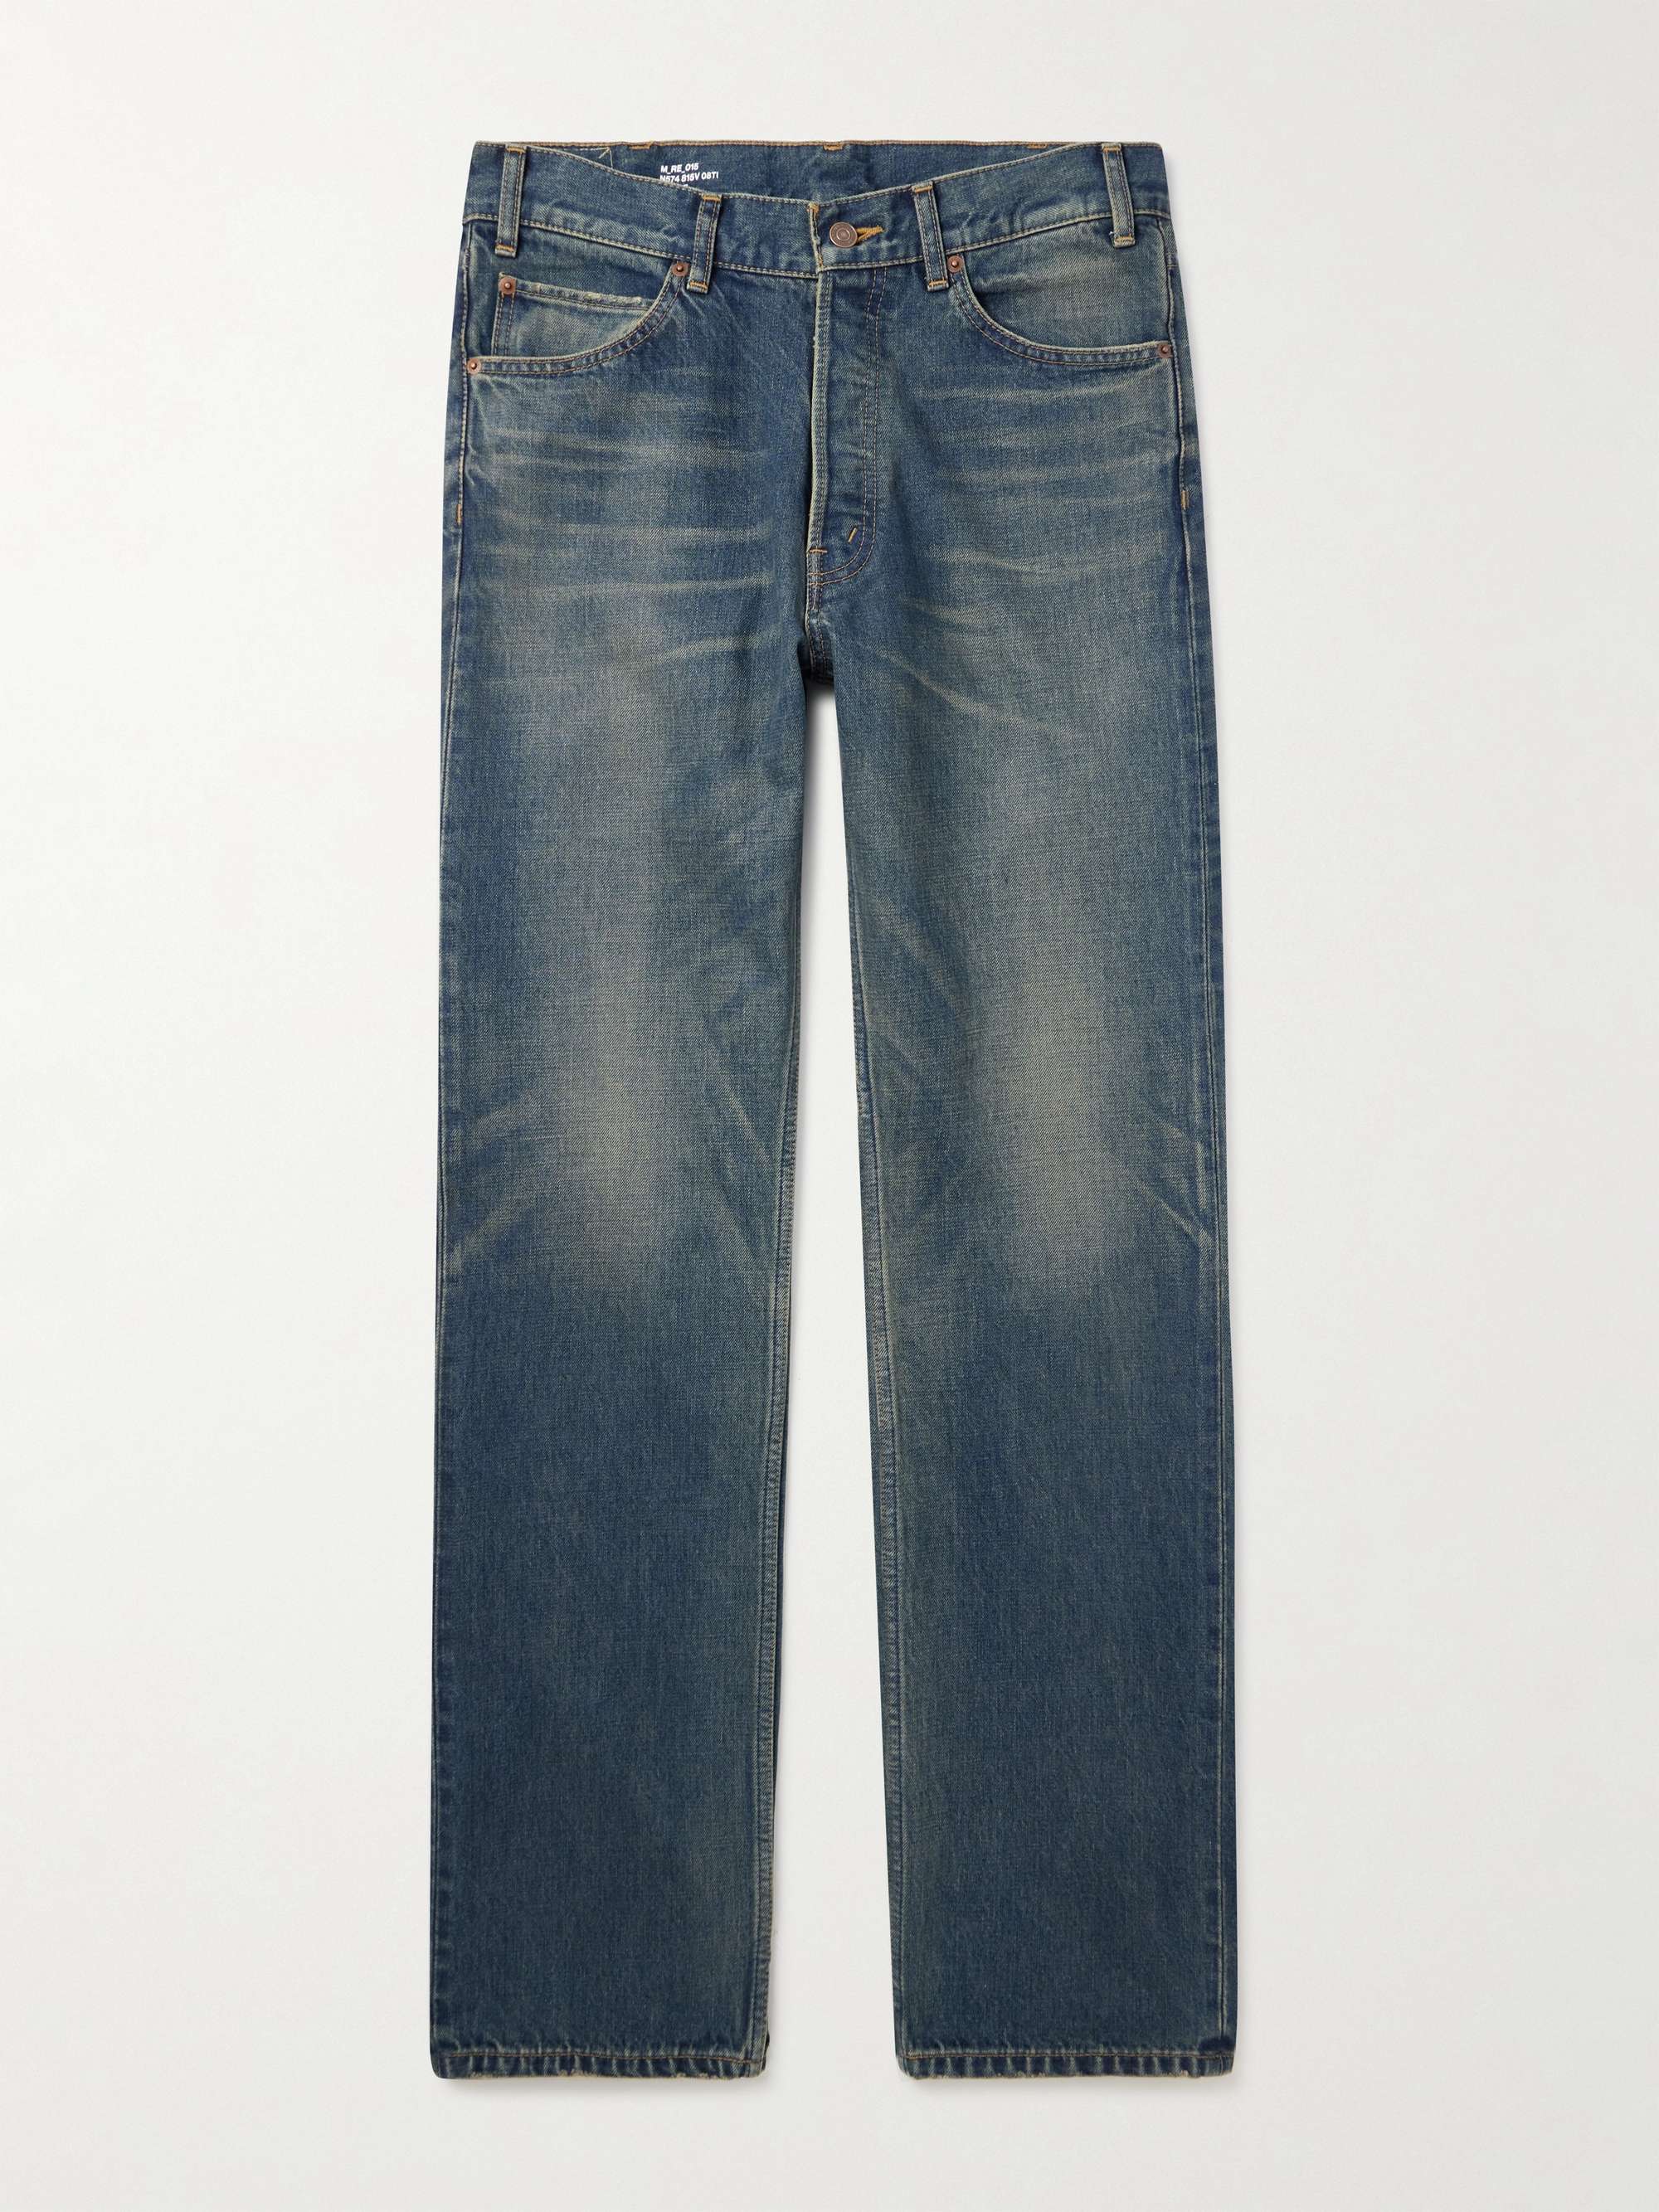 CELINE HOMME Kurt Straight-Leg Jeans for Men | MR PORTER